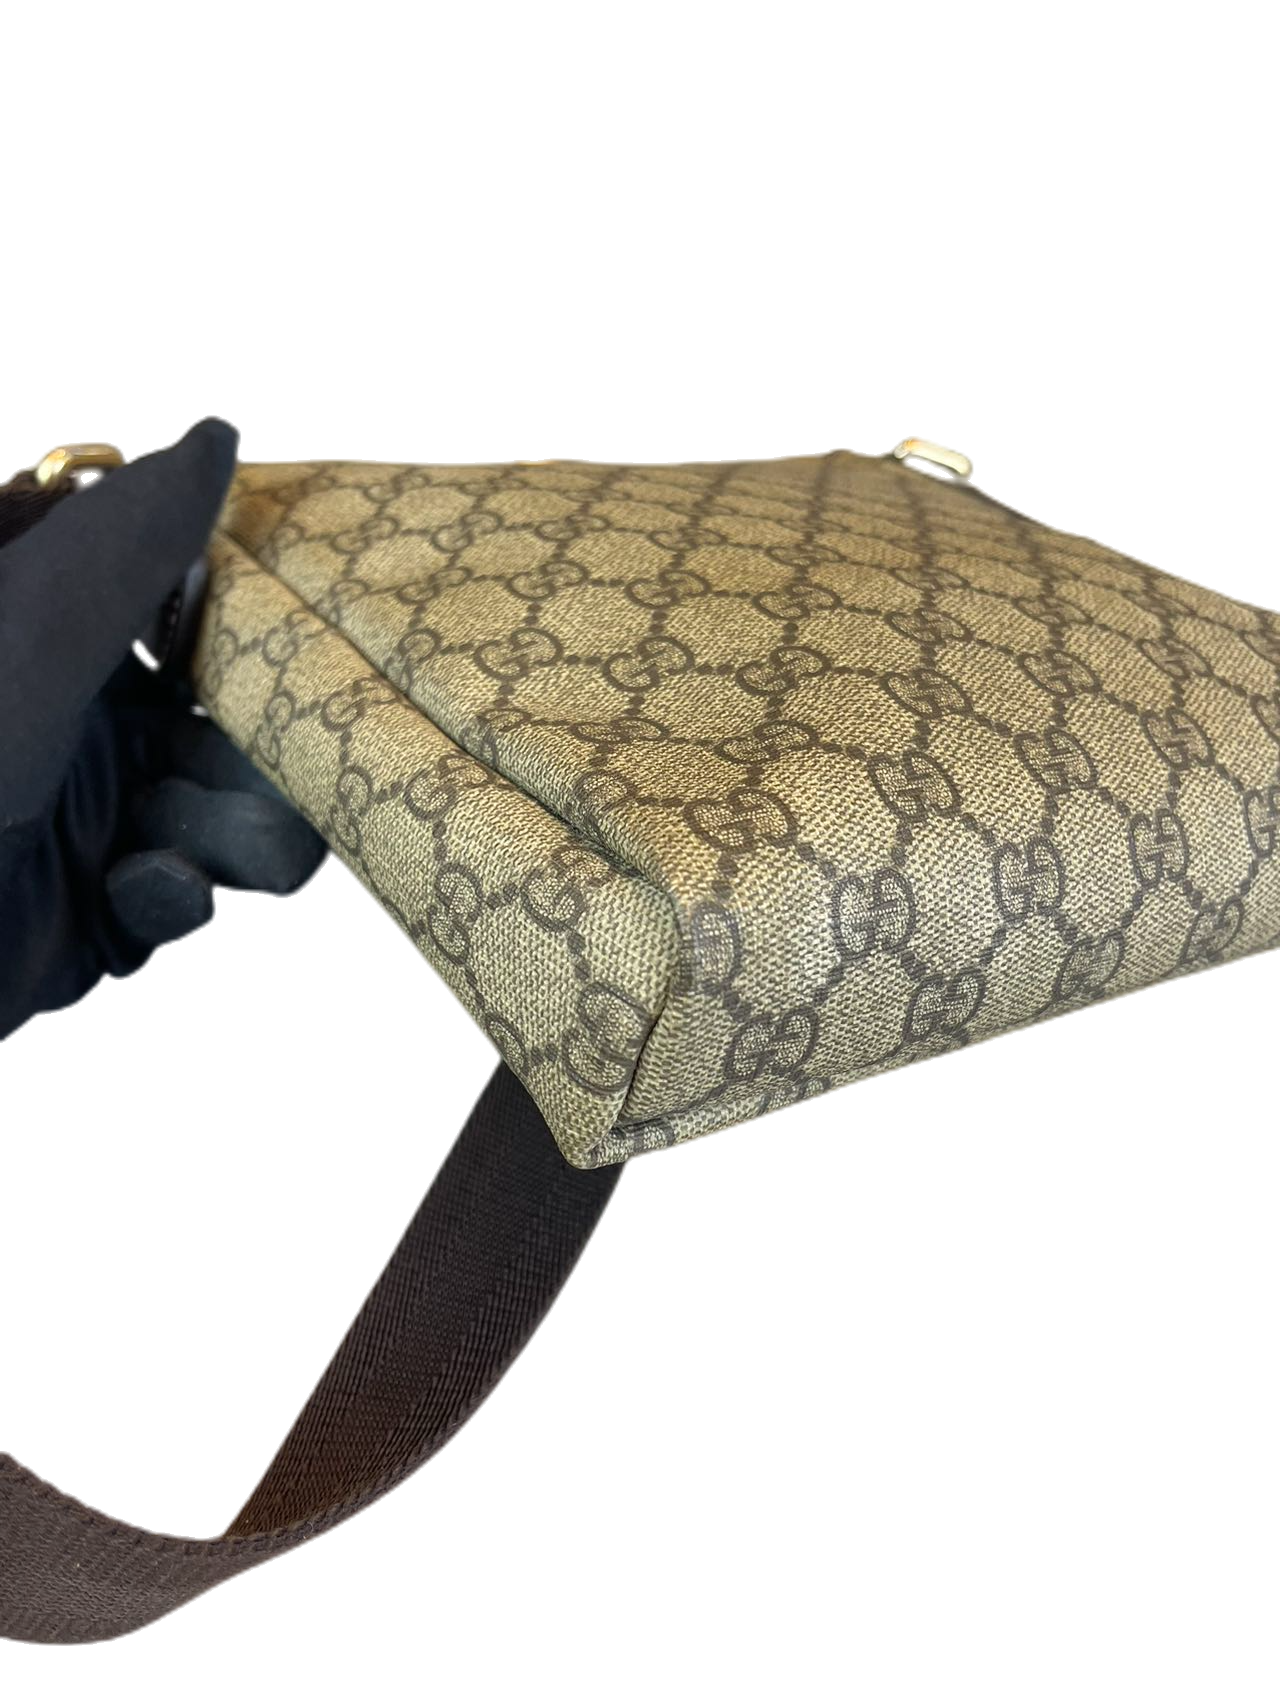 Preloved Gucci GG Logo Printed Small Messenger bag Shoulder Bag